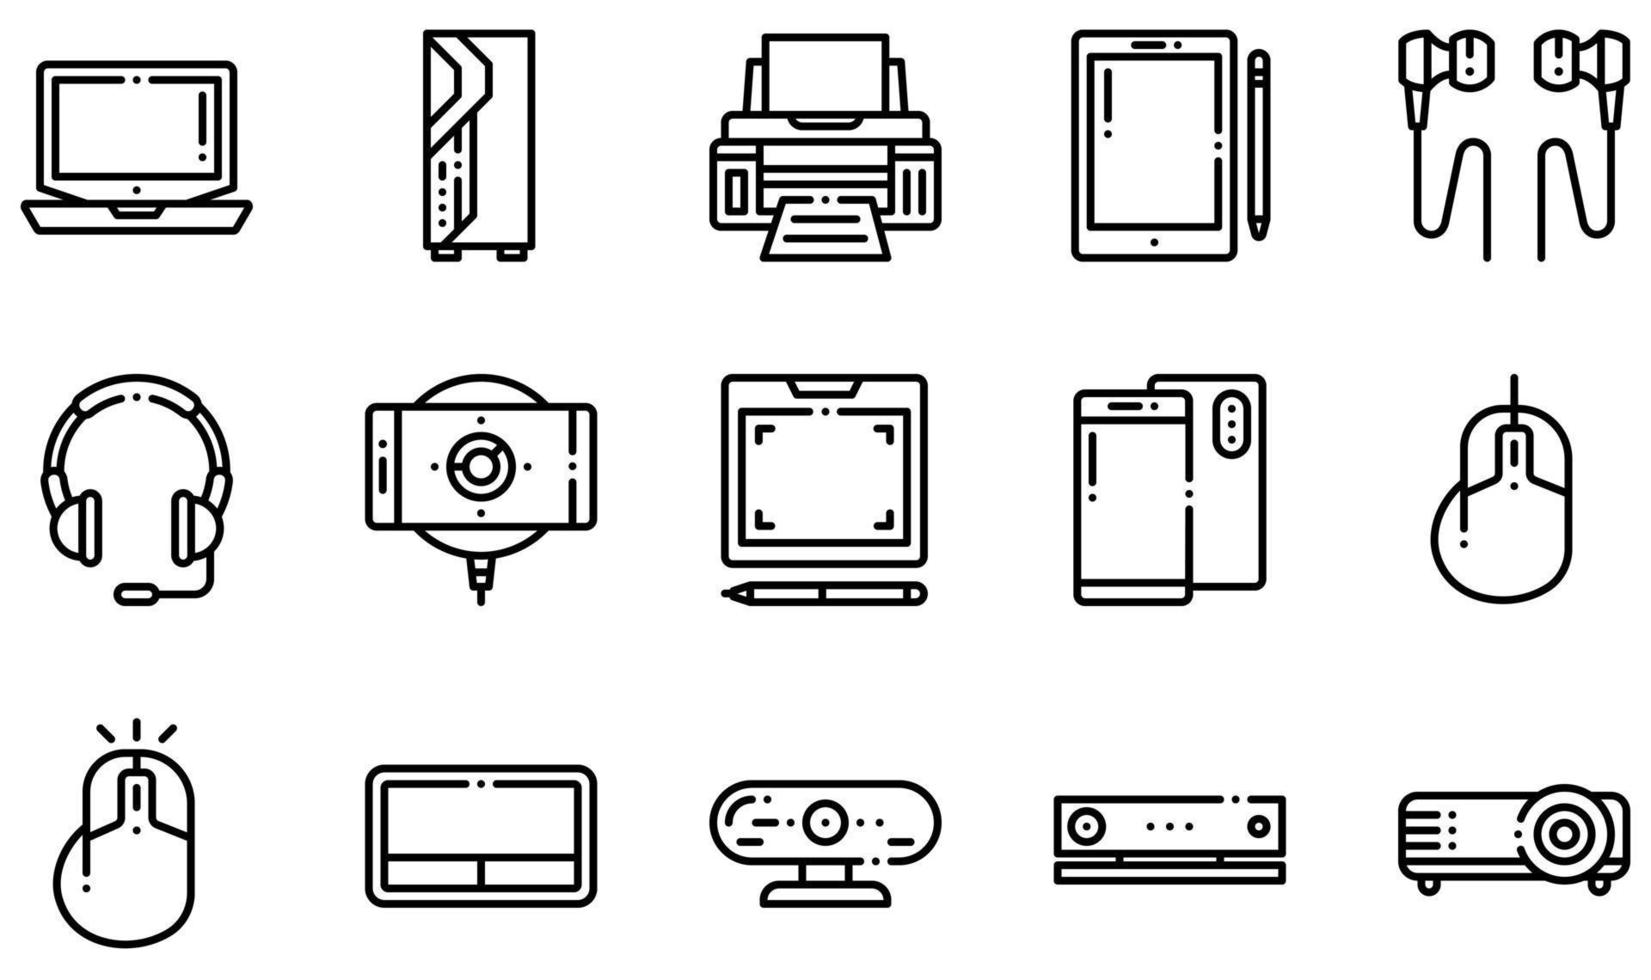 Reihe von Vektorsymbolen für elektronische Geräte. Enthält Symbole wie Reiniger, Kaffeemaschine, Kopfhörer, Wasserkocher, Mikrofon, Mikrowelle und mehr. vektor